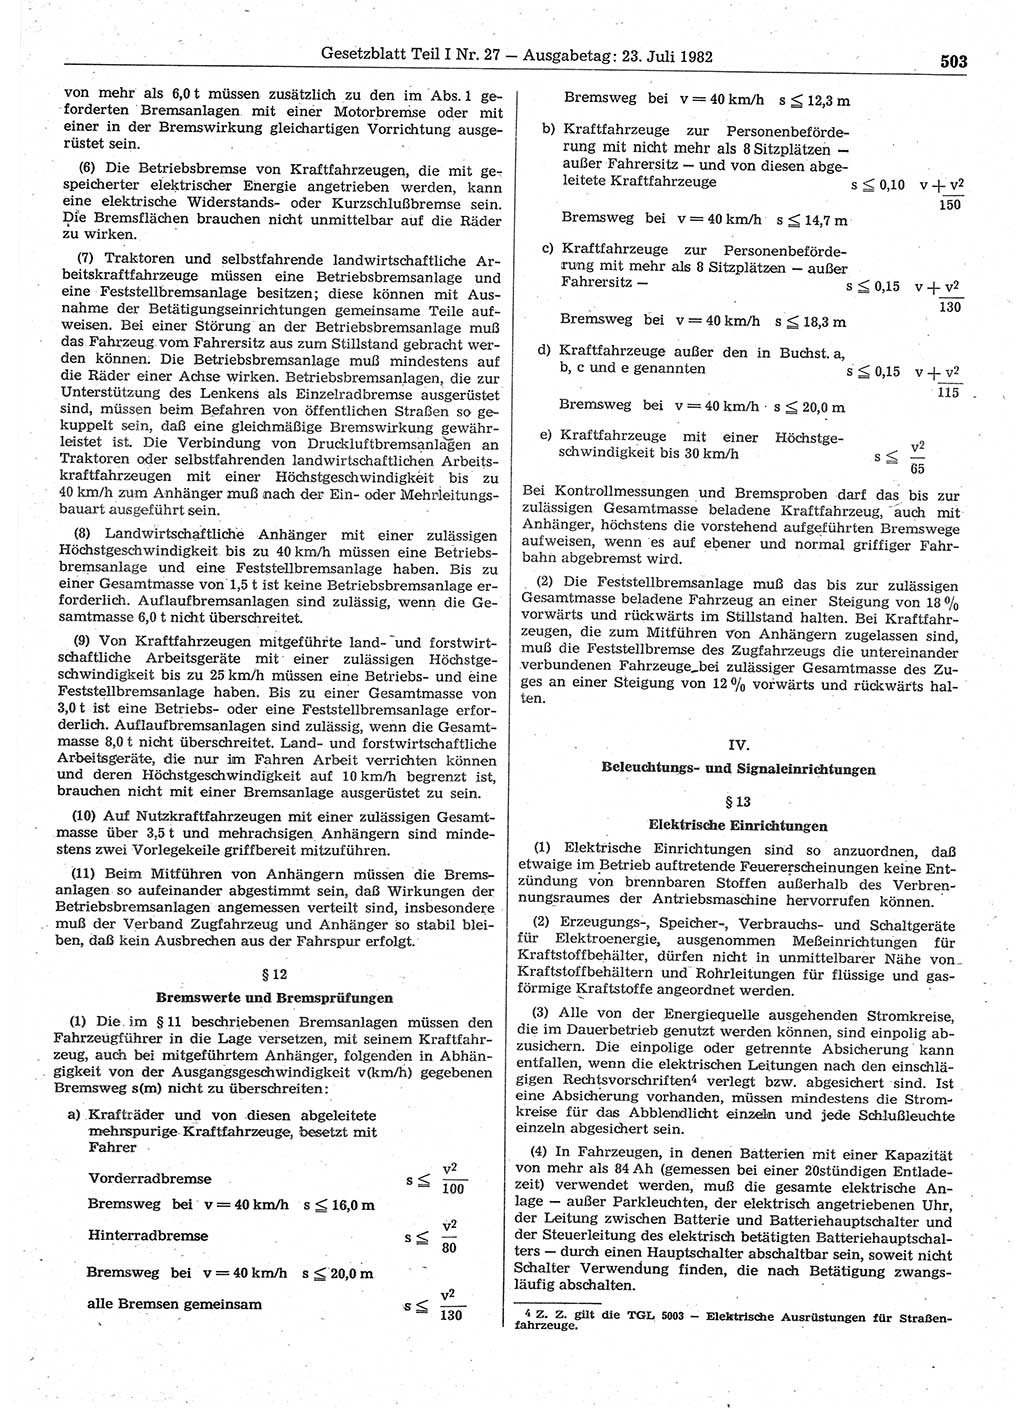 Gesetzblatt (GBl.) der Deutschen Demokratischen Republik (DDR) Teil Ⅰ 1982, Seite 503 (GBl. DDR Ⅰ 1982, S. 503)